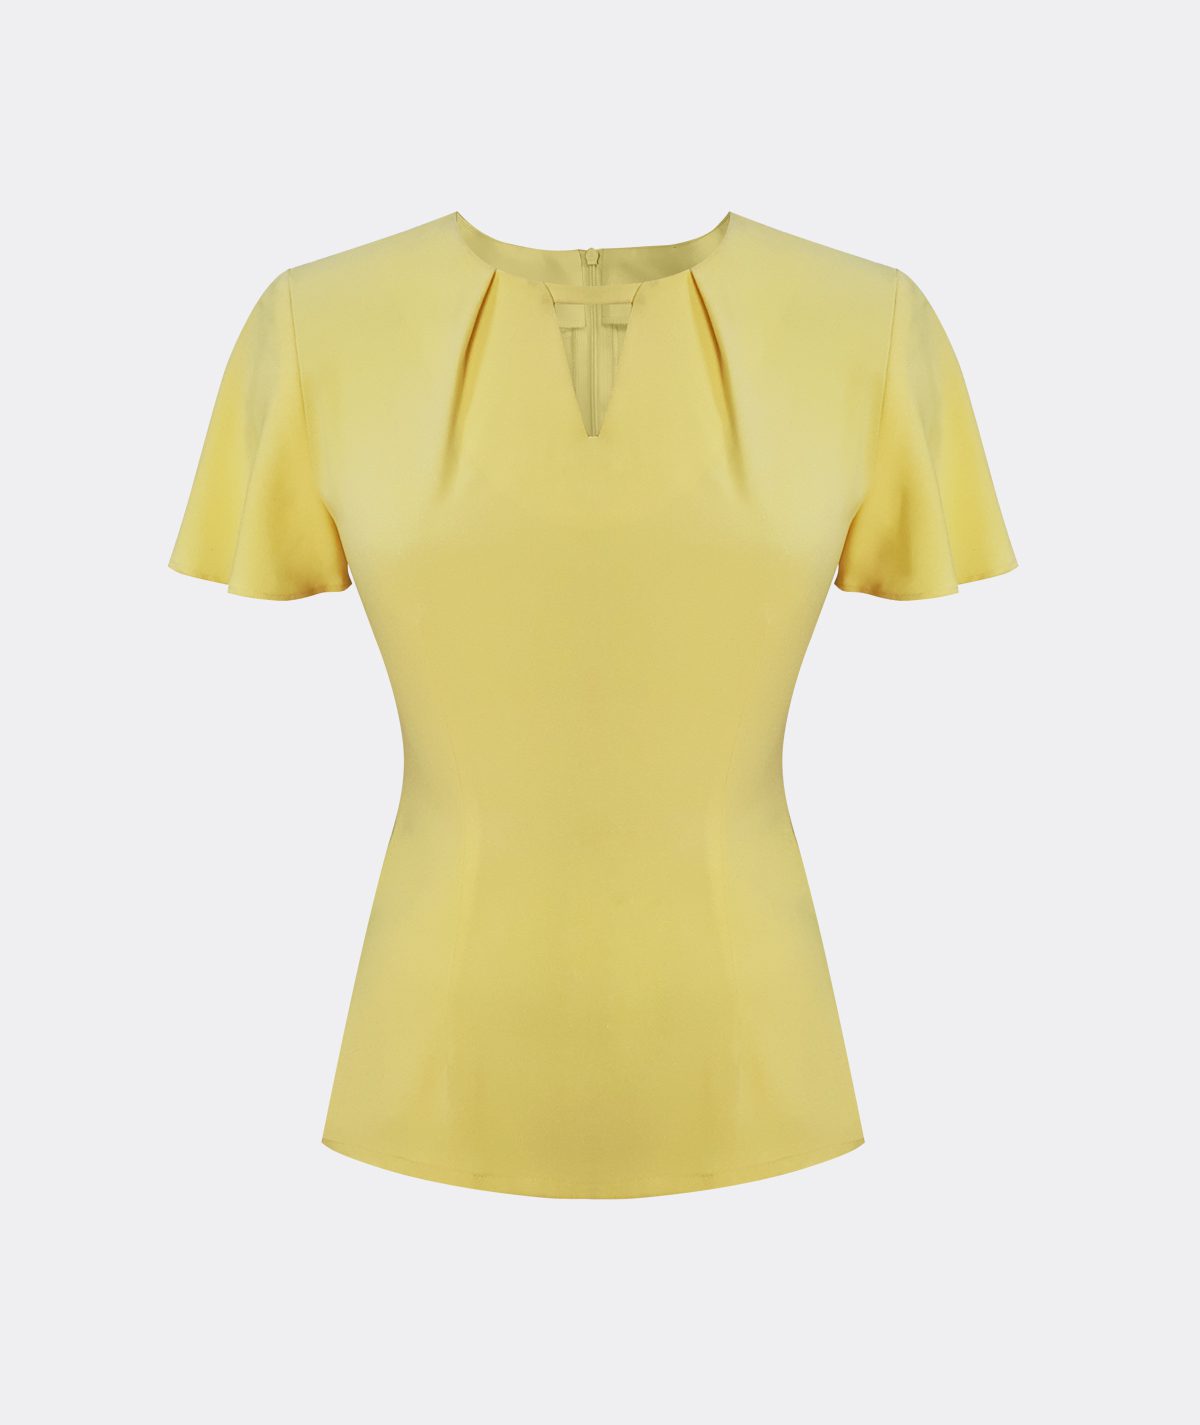 ladies-uniform-female-blouse-beauty-advisor-uniform-front-desk-uniform-corporate-workwear-singapore-uniform-design-blouse-with-flare-sleeve